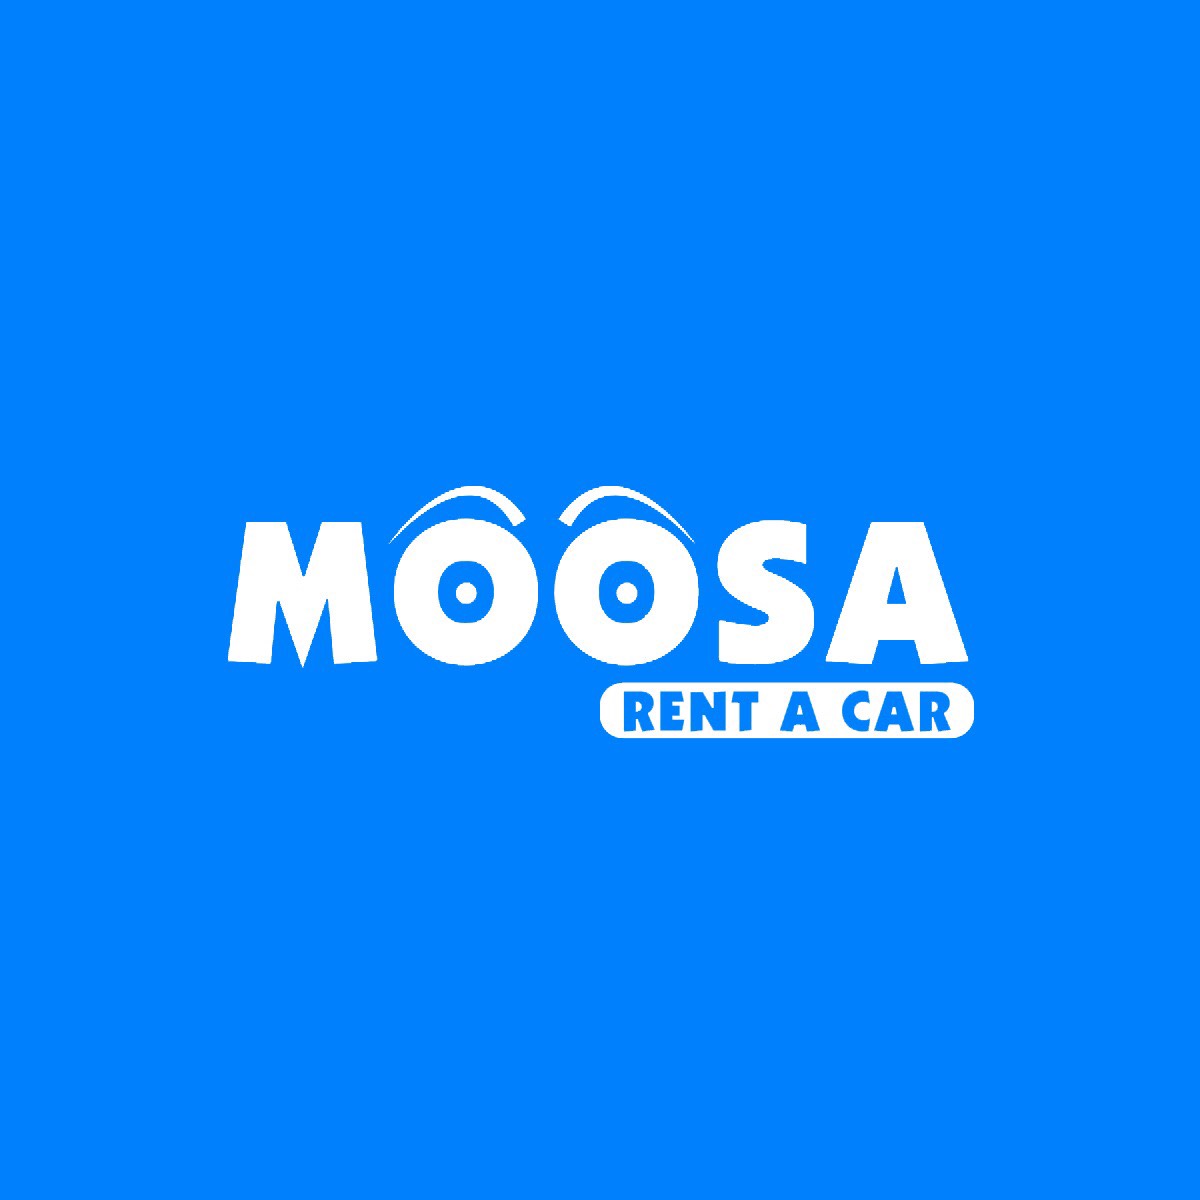 Moosa Cheap rent a car online Dubai